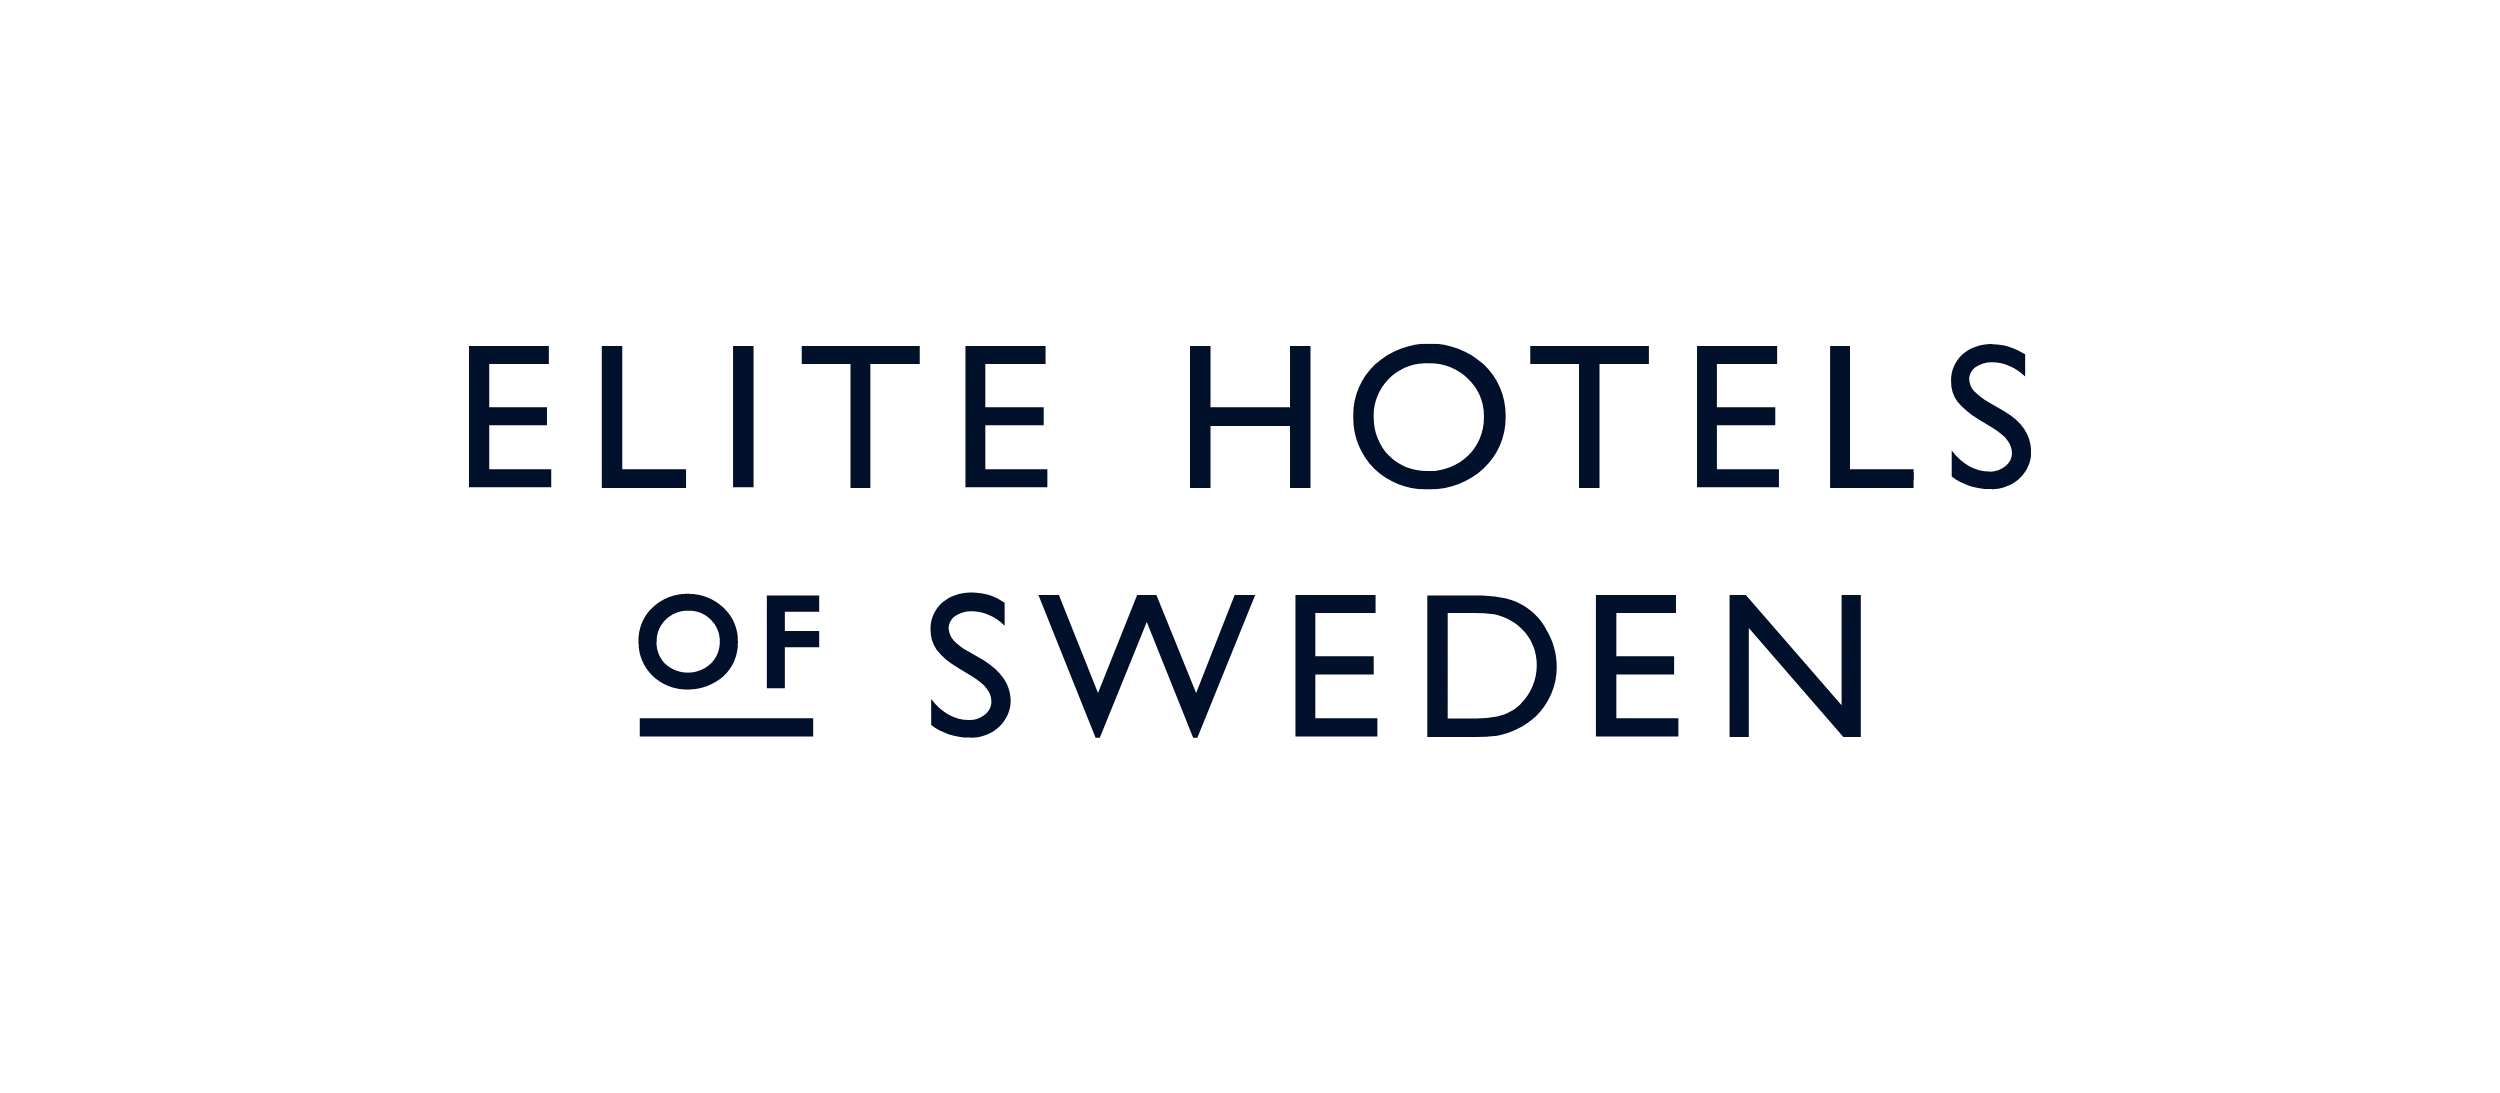 Elite Hotels of Sweden logo